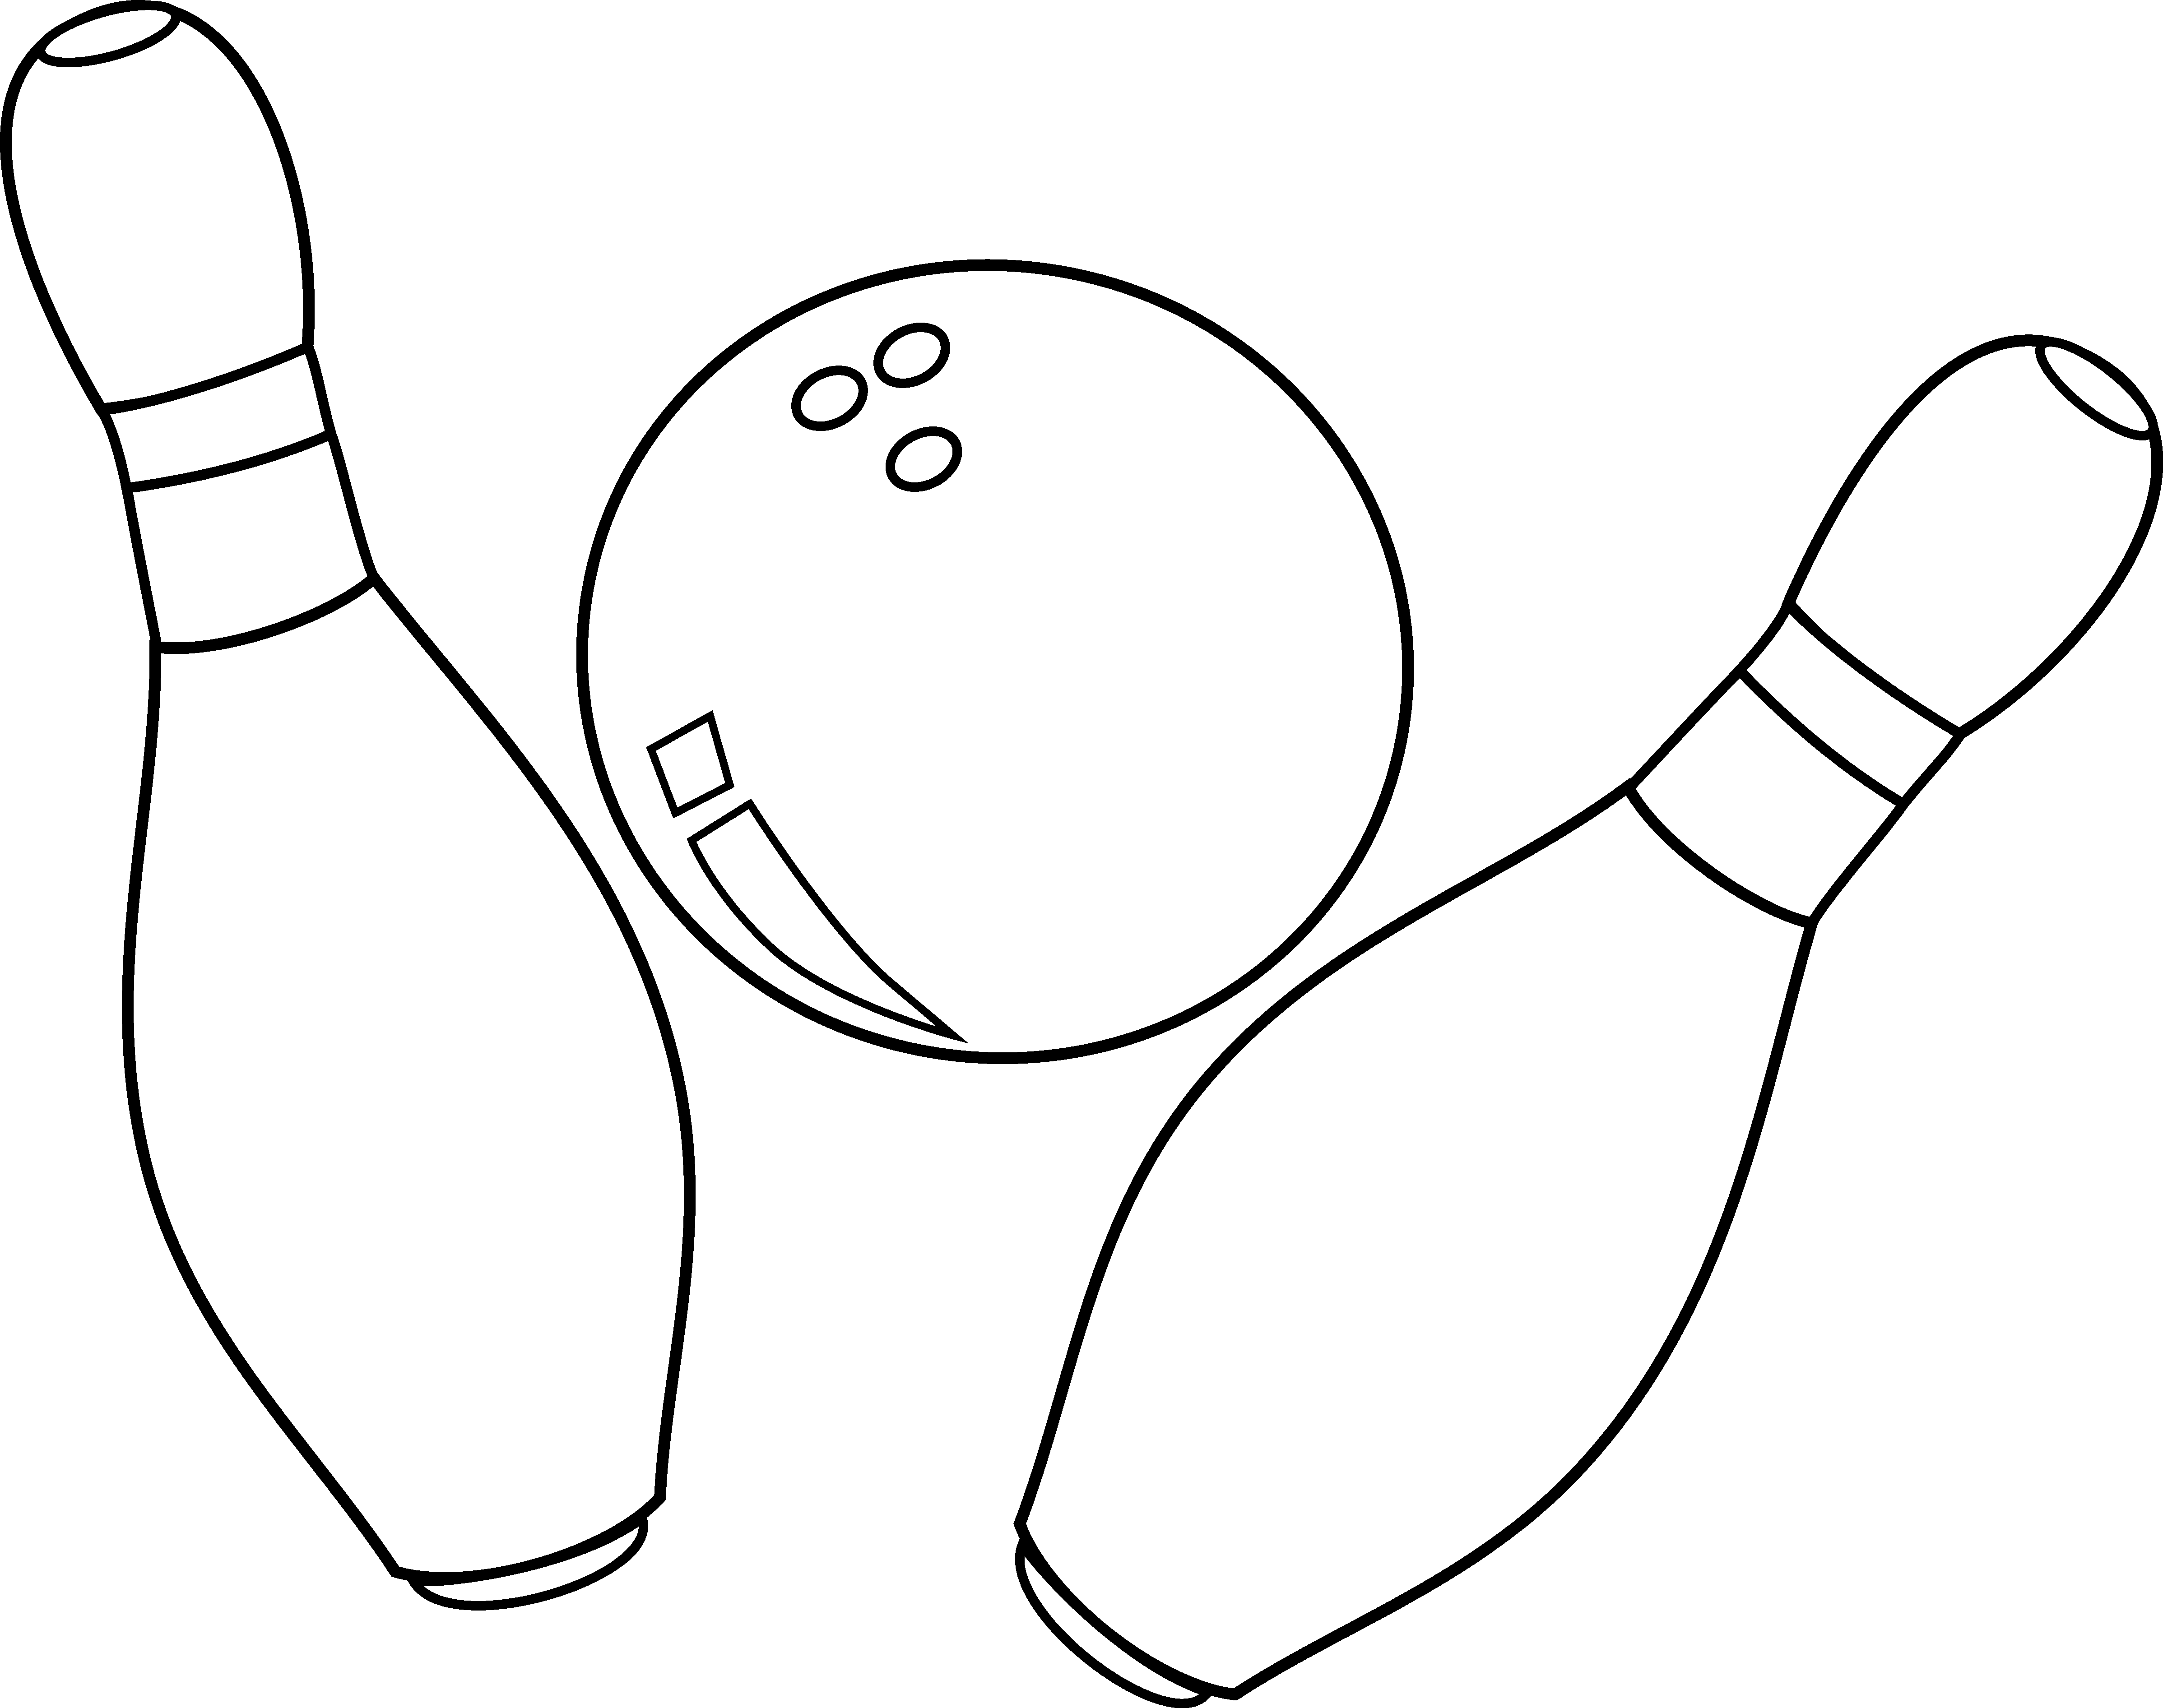 Bowling Pin Coloring Page at Free printable